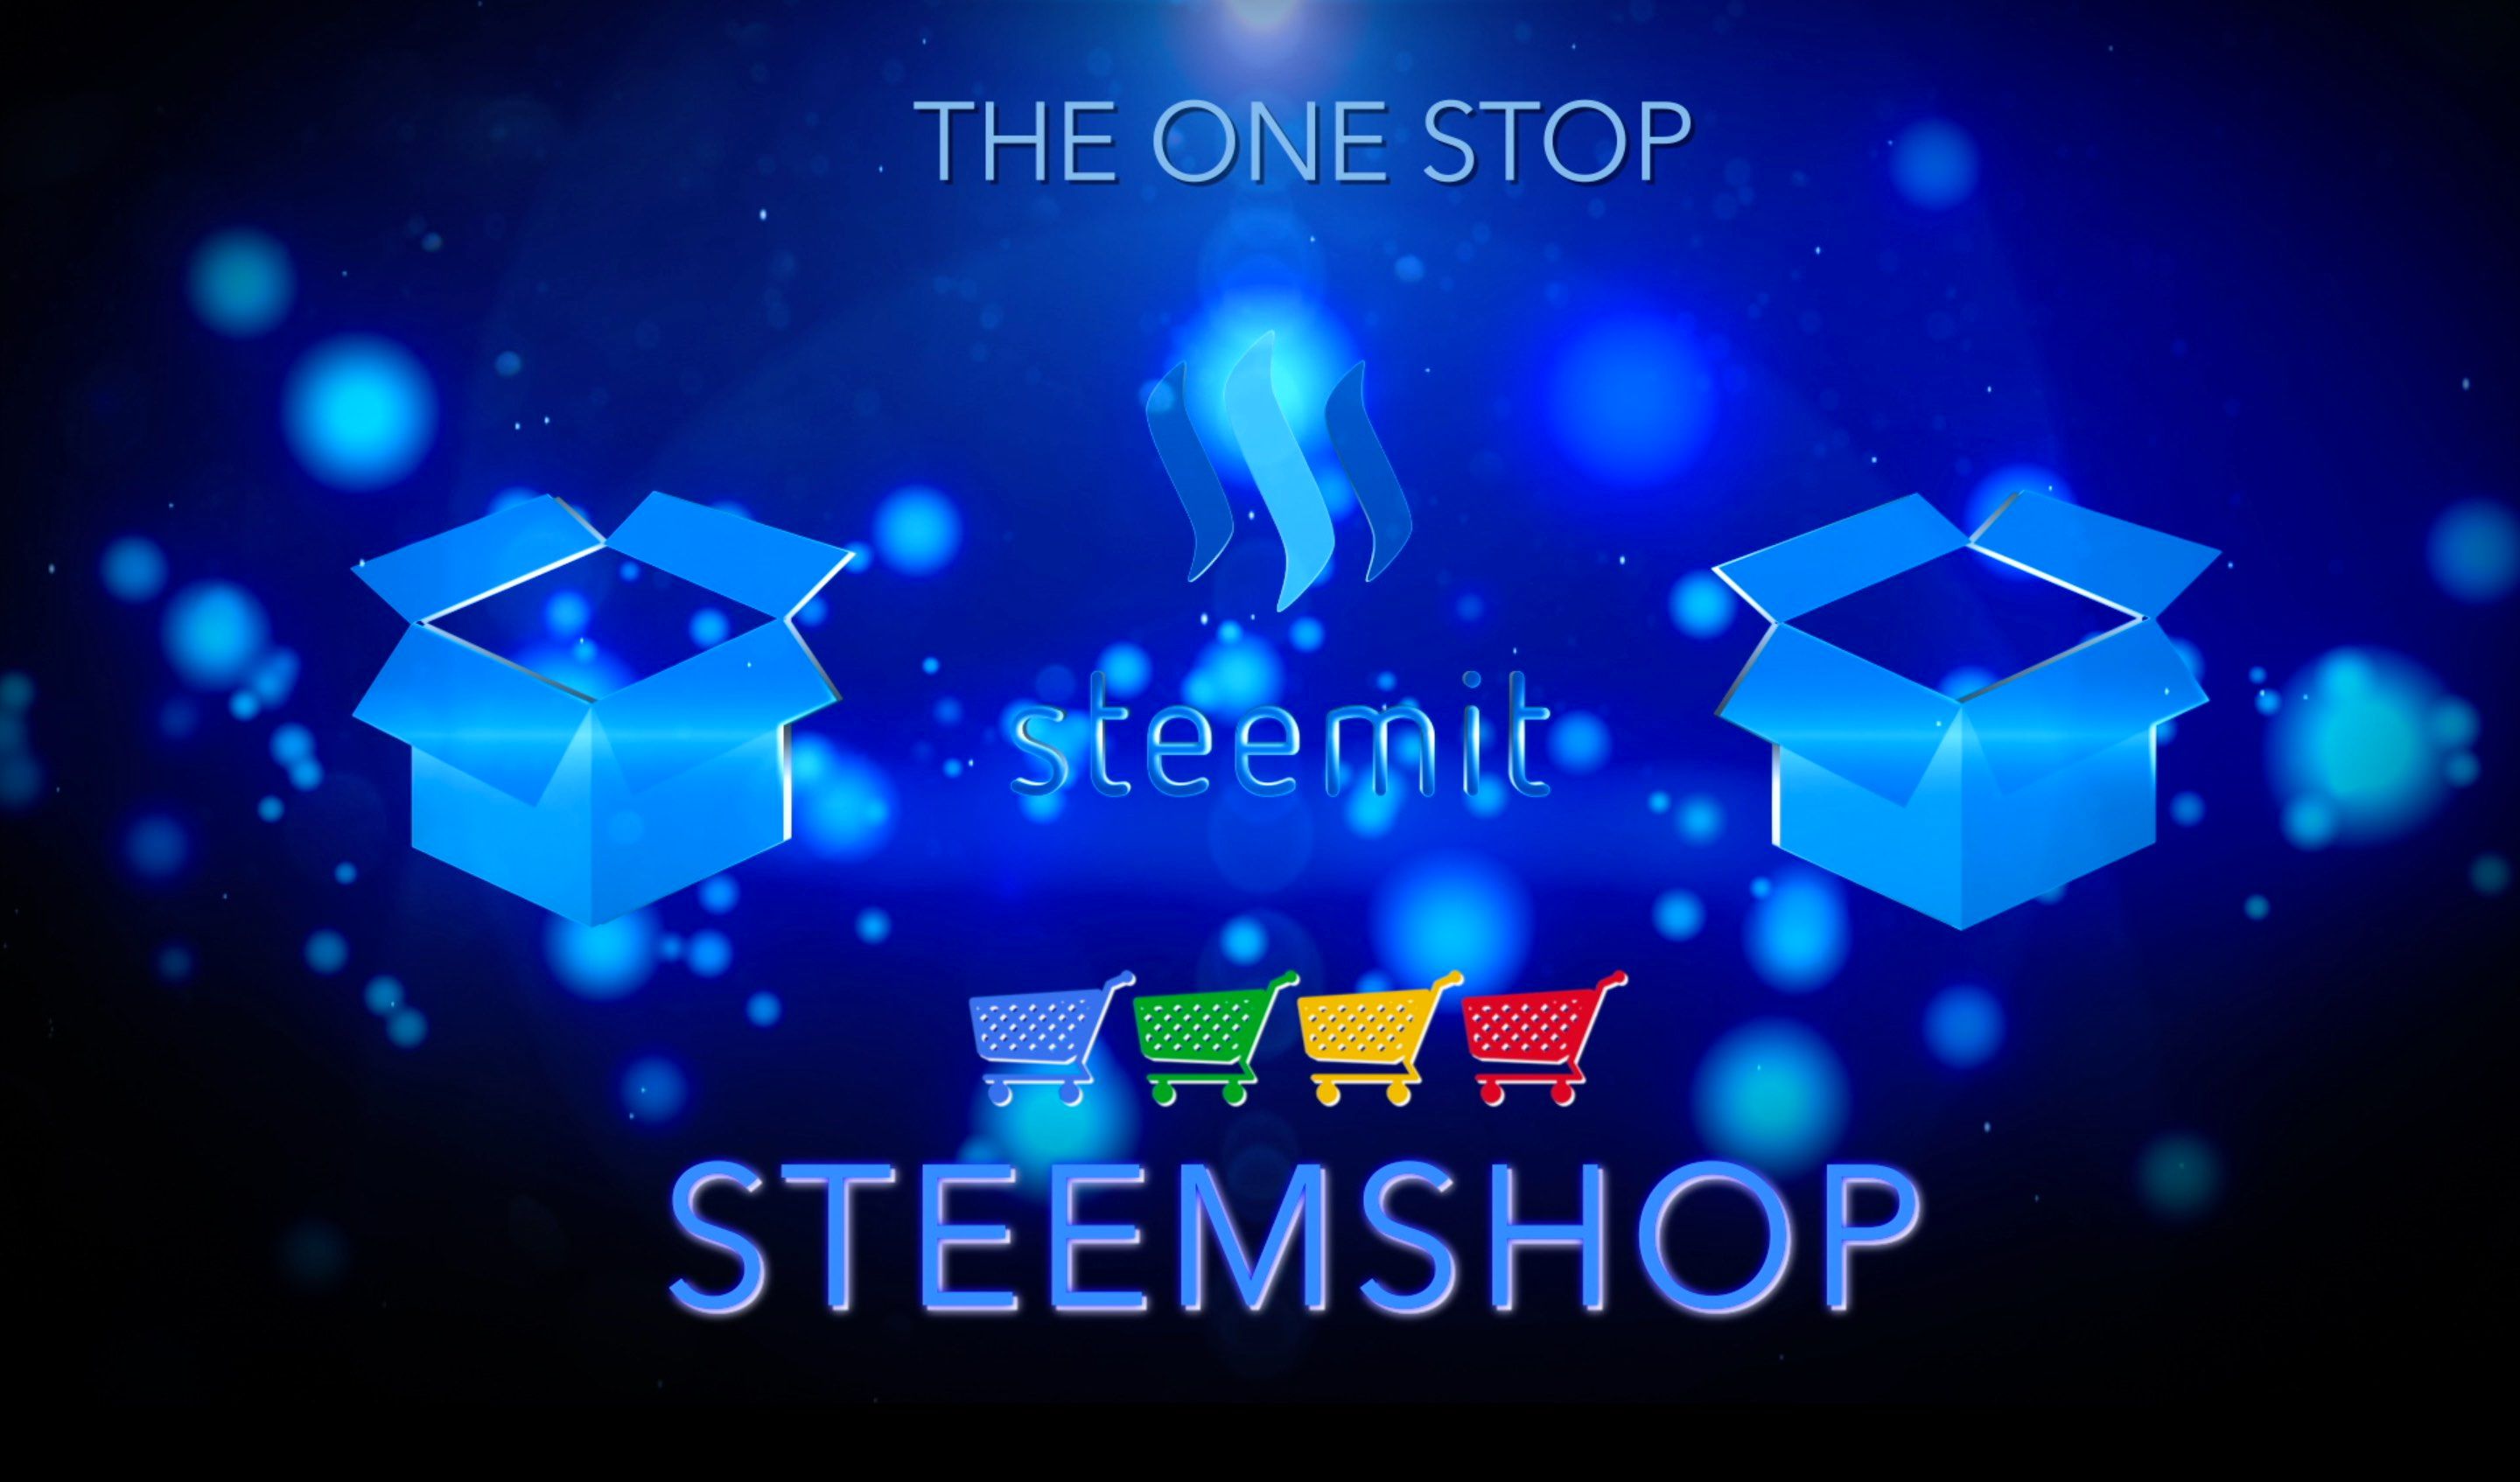 one stop steemshop.jpg